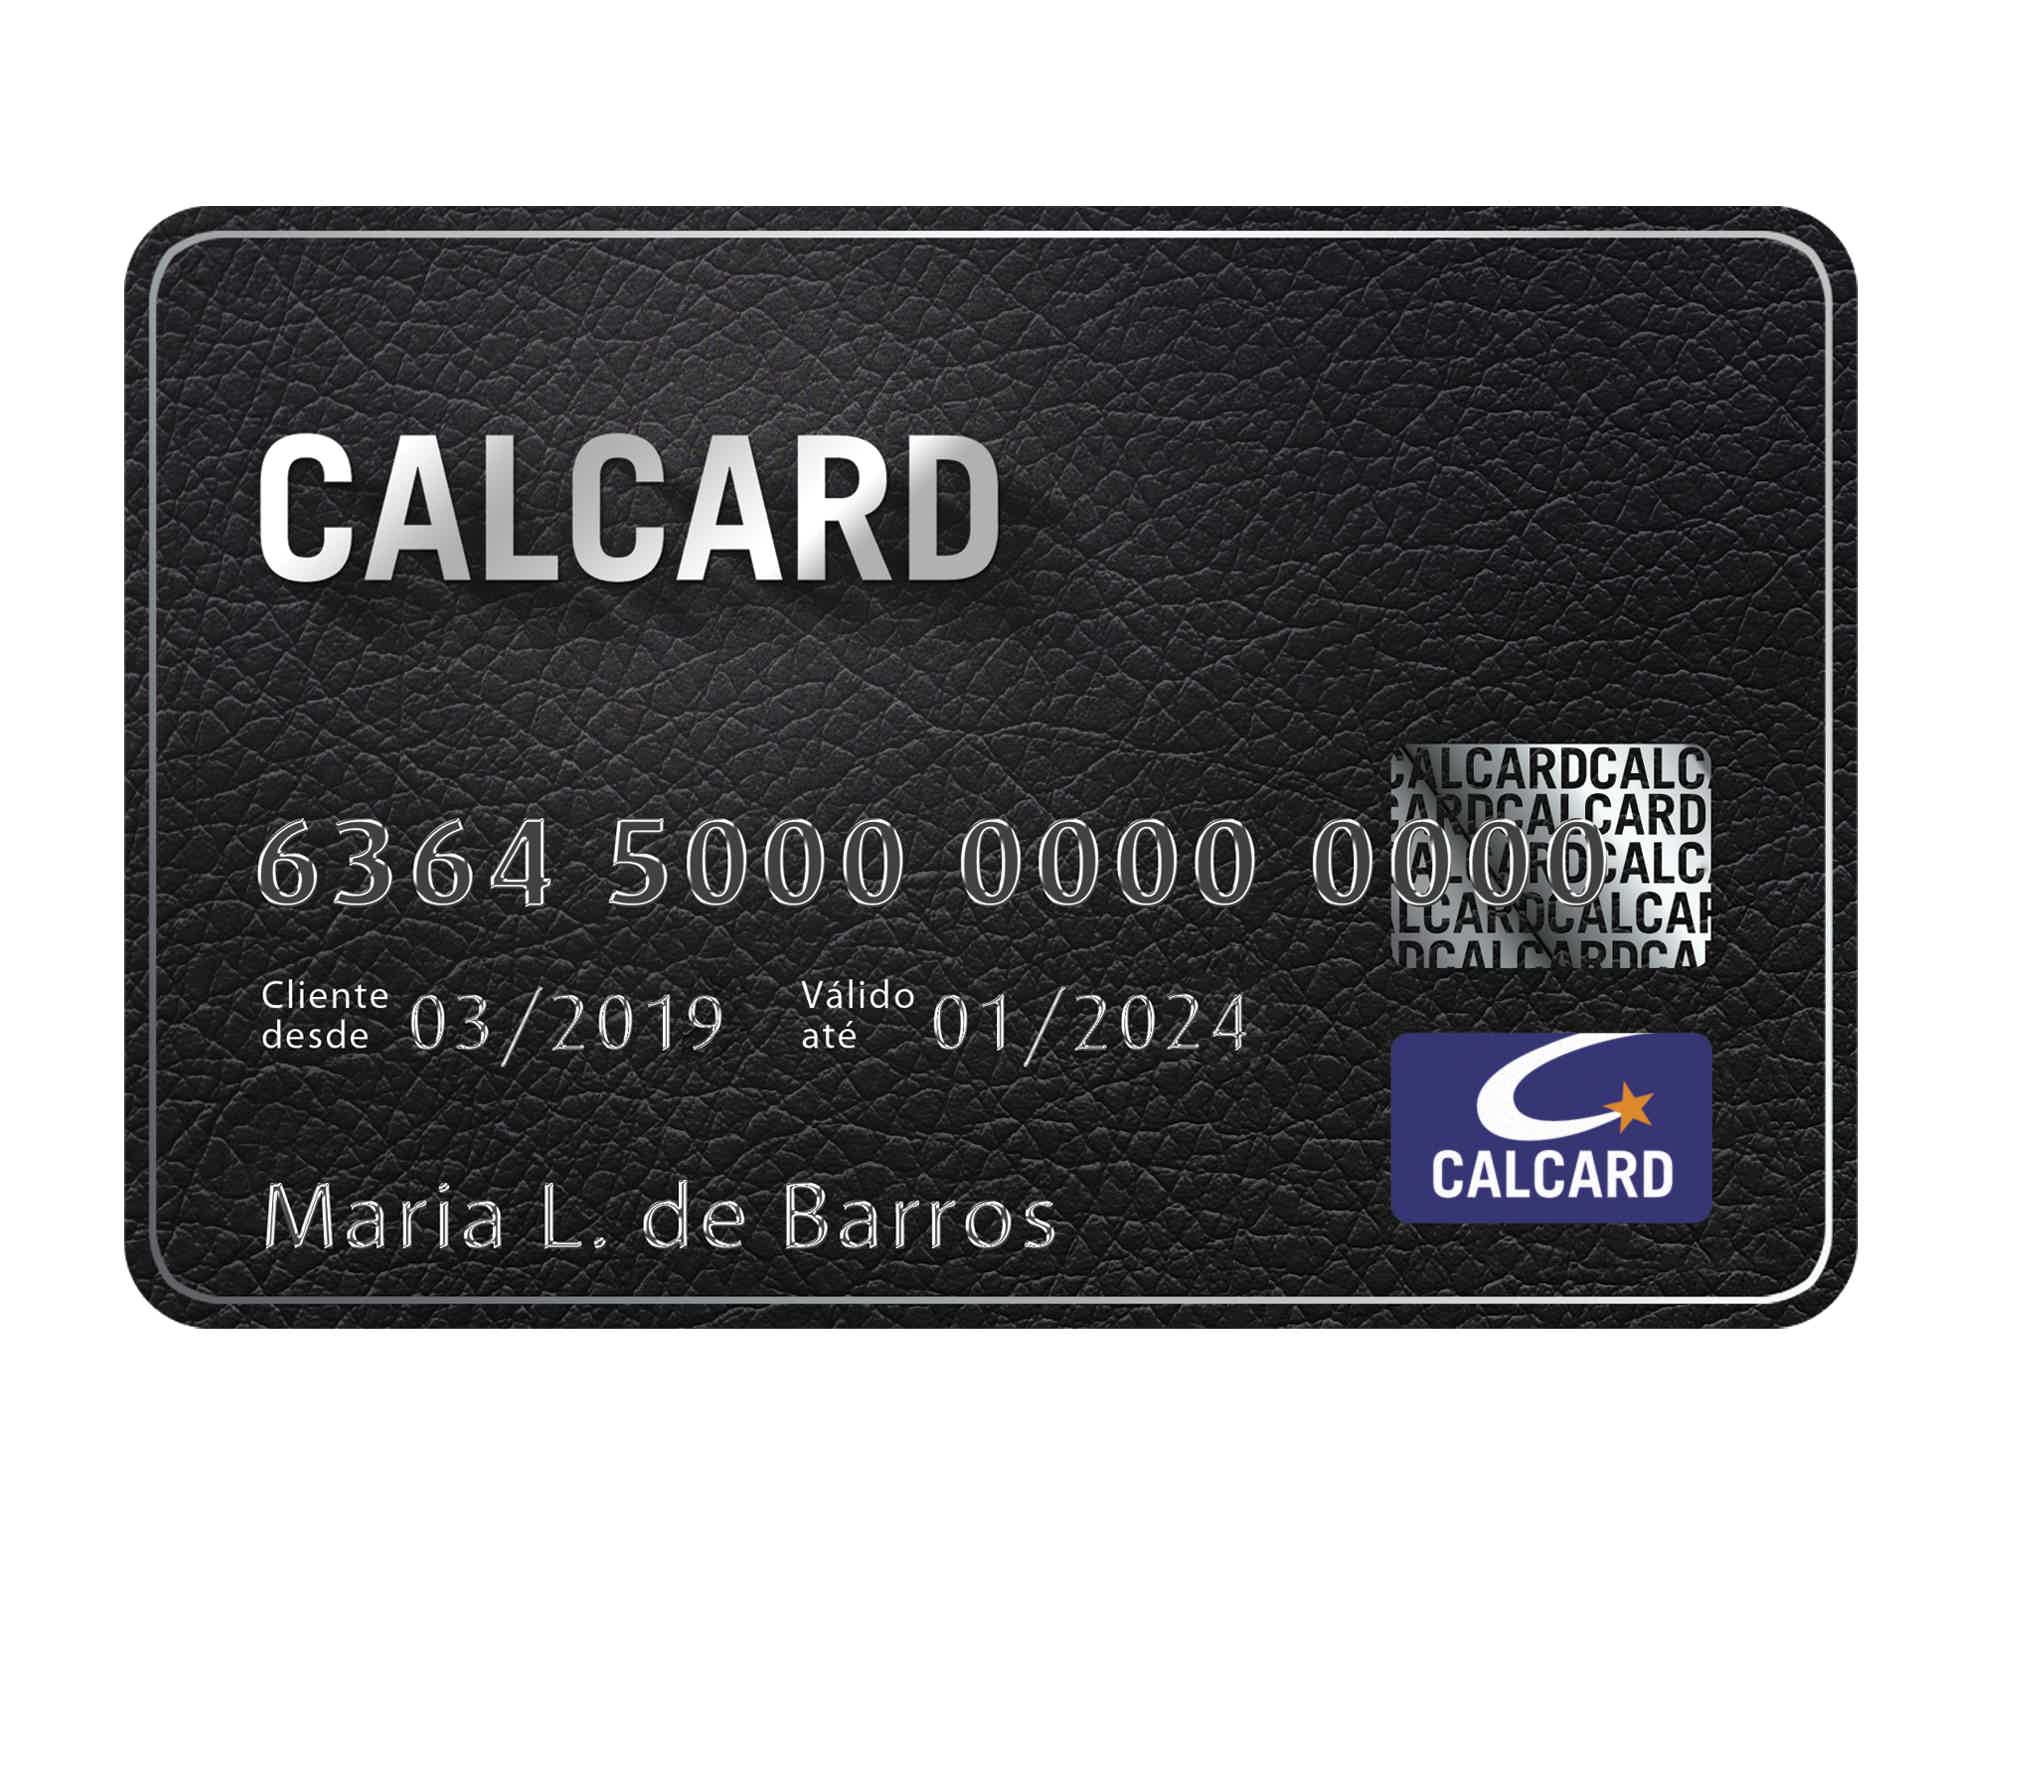 Cartão de crédito Calcard